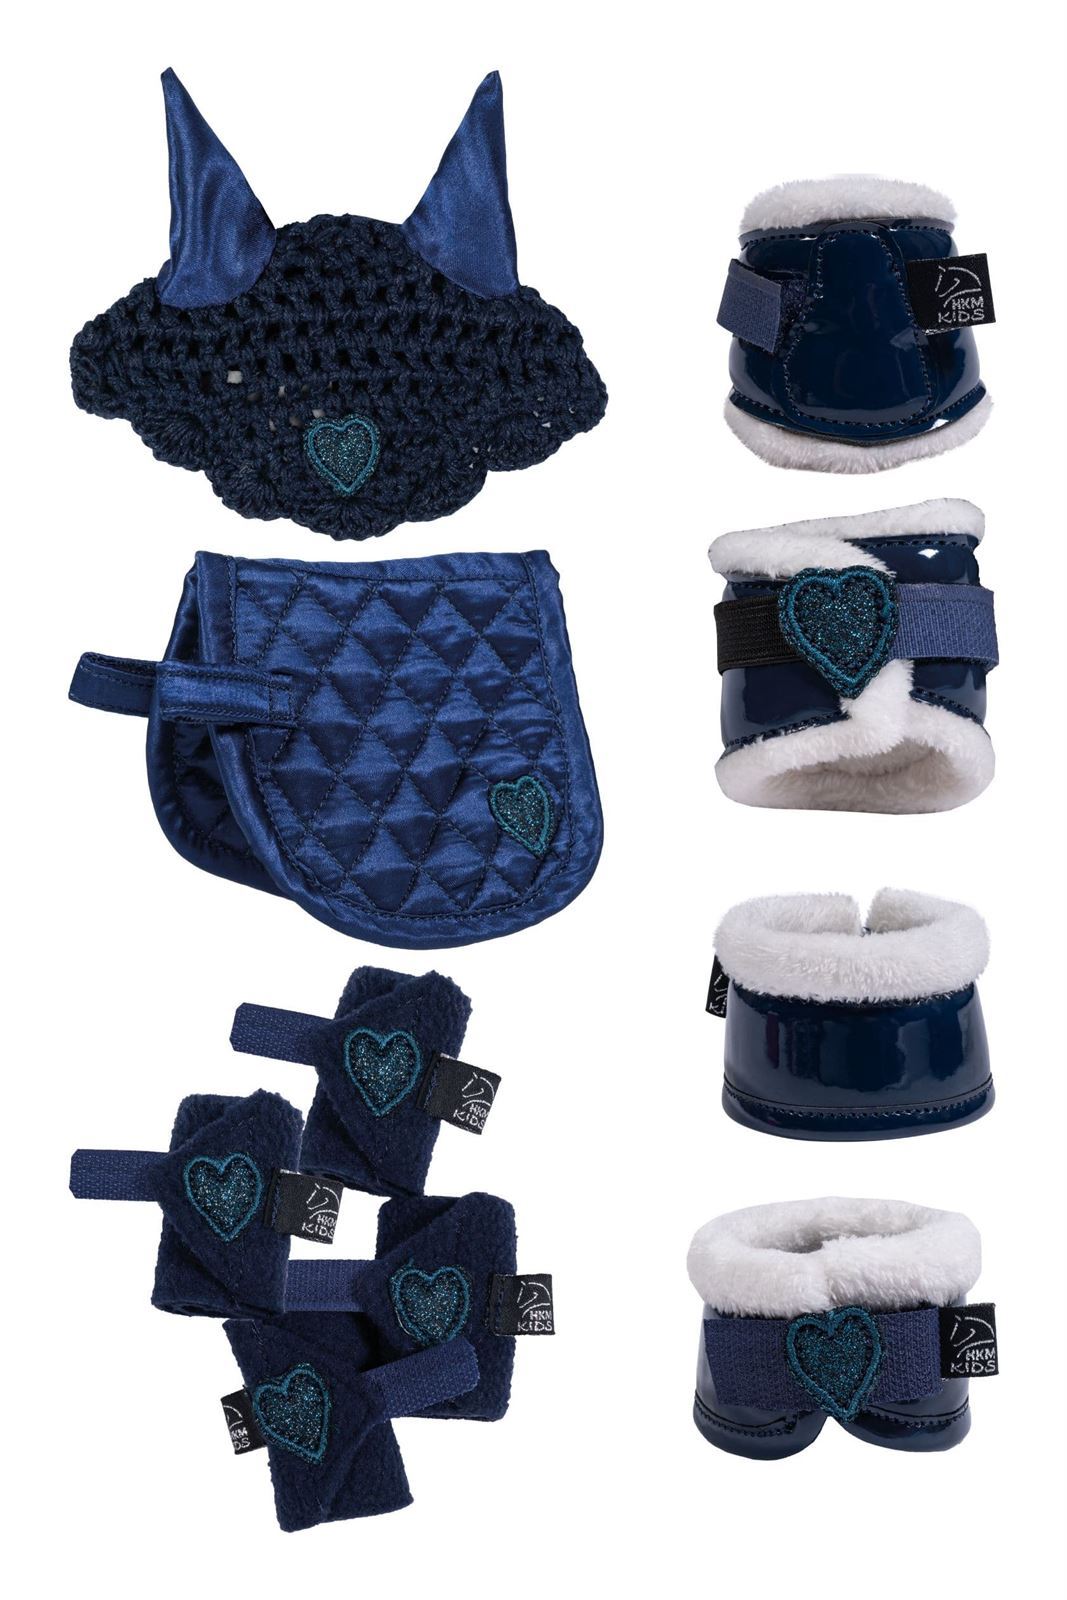 Set accesorios Cuddle pony HKM Sports Equipment Mantilla, orejeras, vendas, protectores y campanas color azul marino - Imagen 1